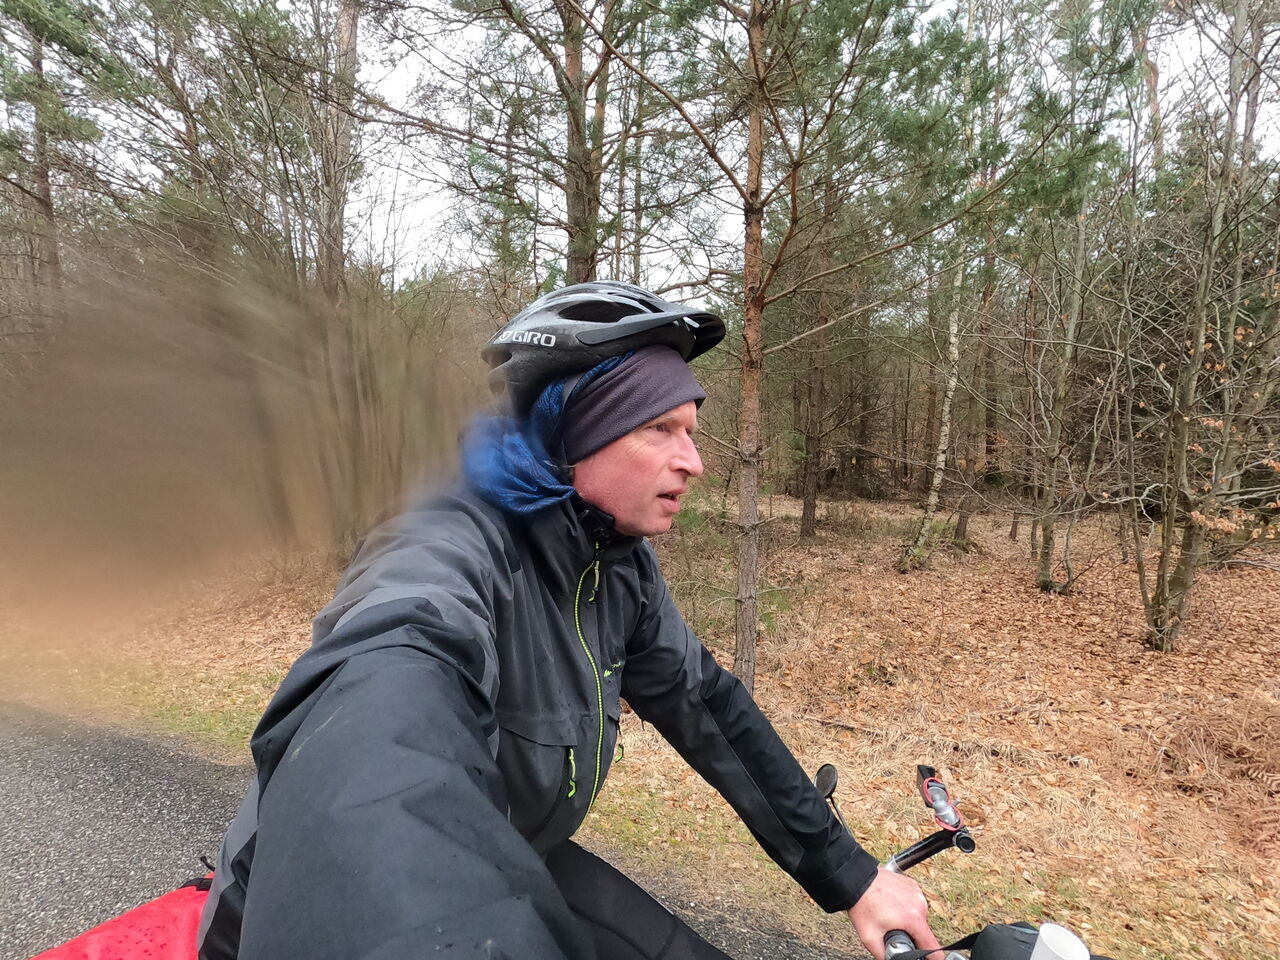 Mensch mit Regenkleidung und Fahrradhelm auf dem Fahrrad von der Seite sich selbst fotografierend. Im Hintergrund ein lichtes Wäldchen, das noch kaum Laub trägt.